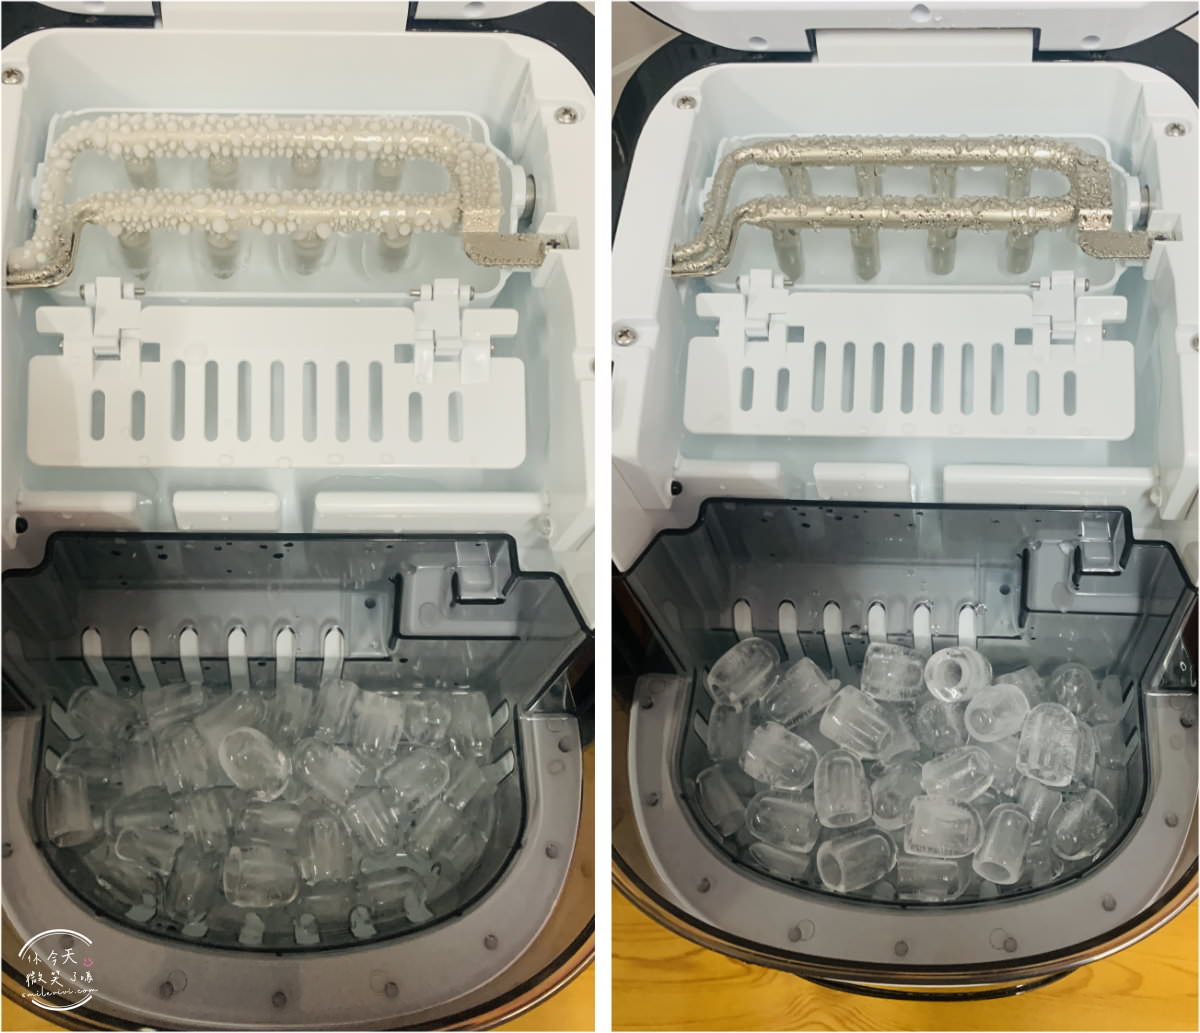 開箱∥KOHZII 康馳全開式全自動製冰機︱可選冰塊尺寸，雙重清潔︱製冰機開箱，簡單又快速︱家用製冰機推薦 14 KOHZII 15